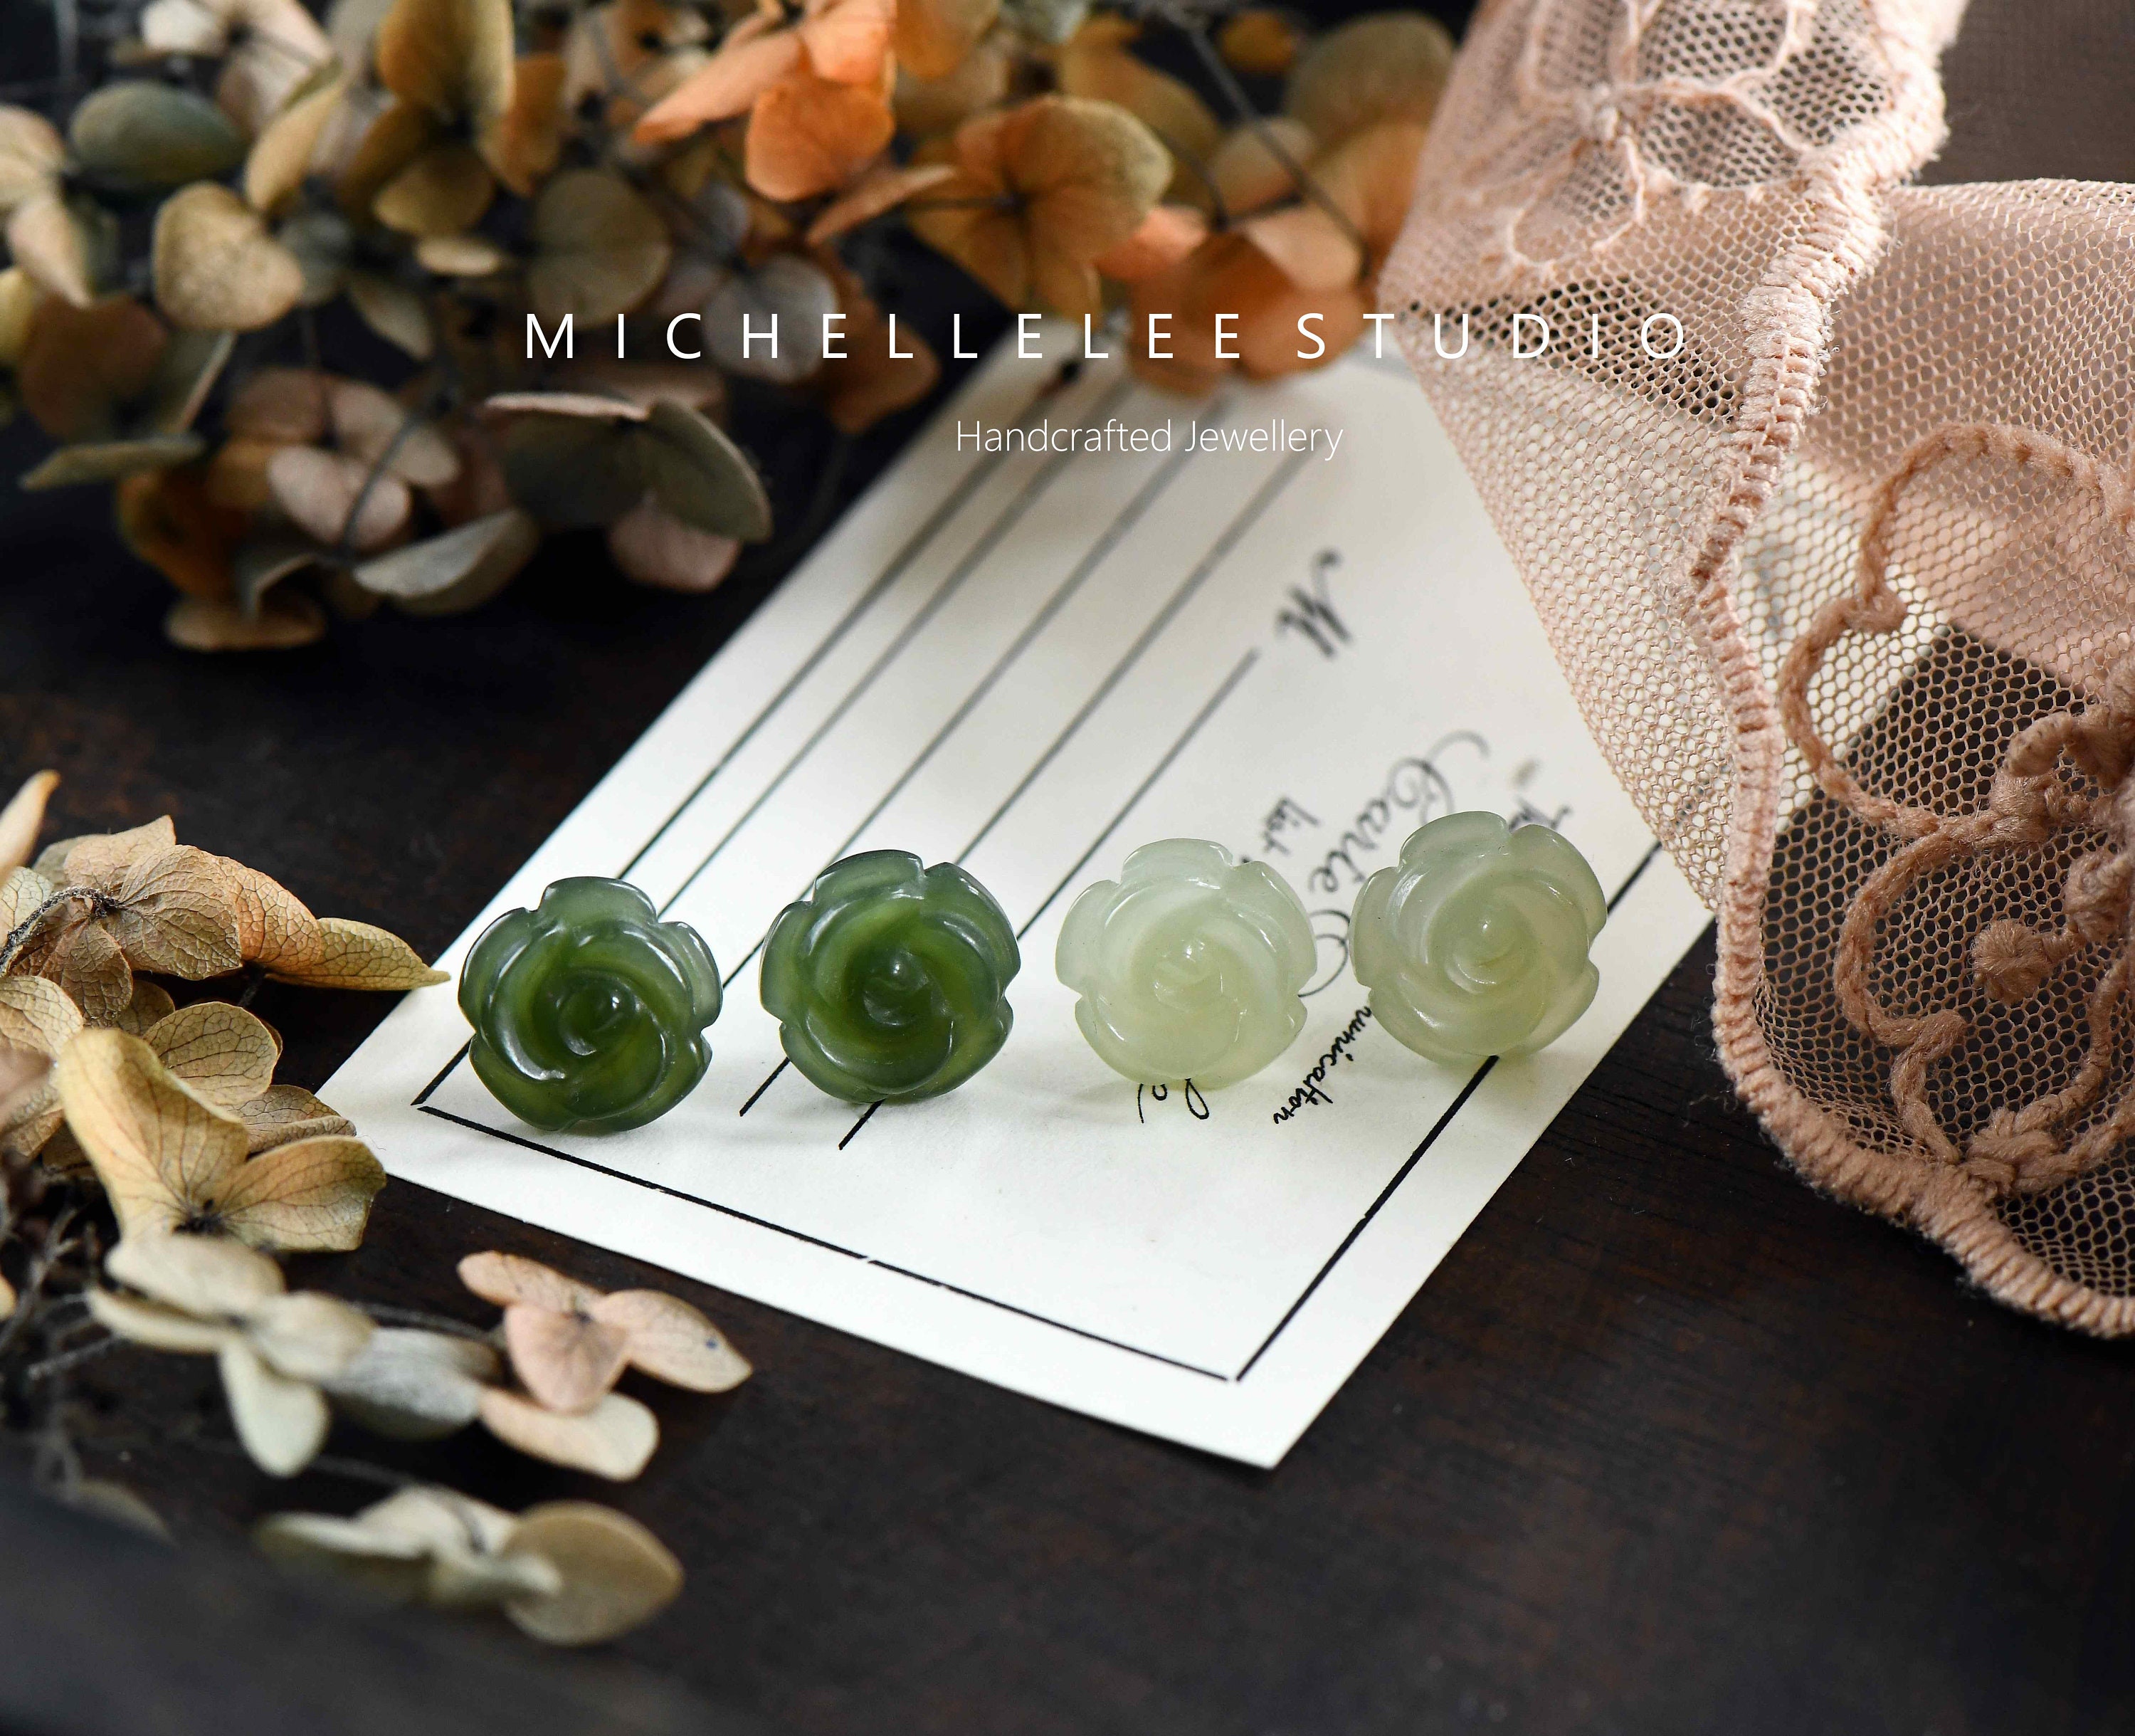 Leaf Earrings - Leaf Studs - Jade Earrings - Nature - Green Leaf Earrings - Green Leaves - A Pair of Carved Jade Leaf Stud Earrings